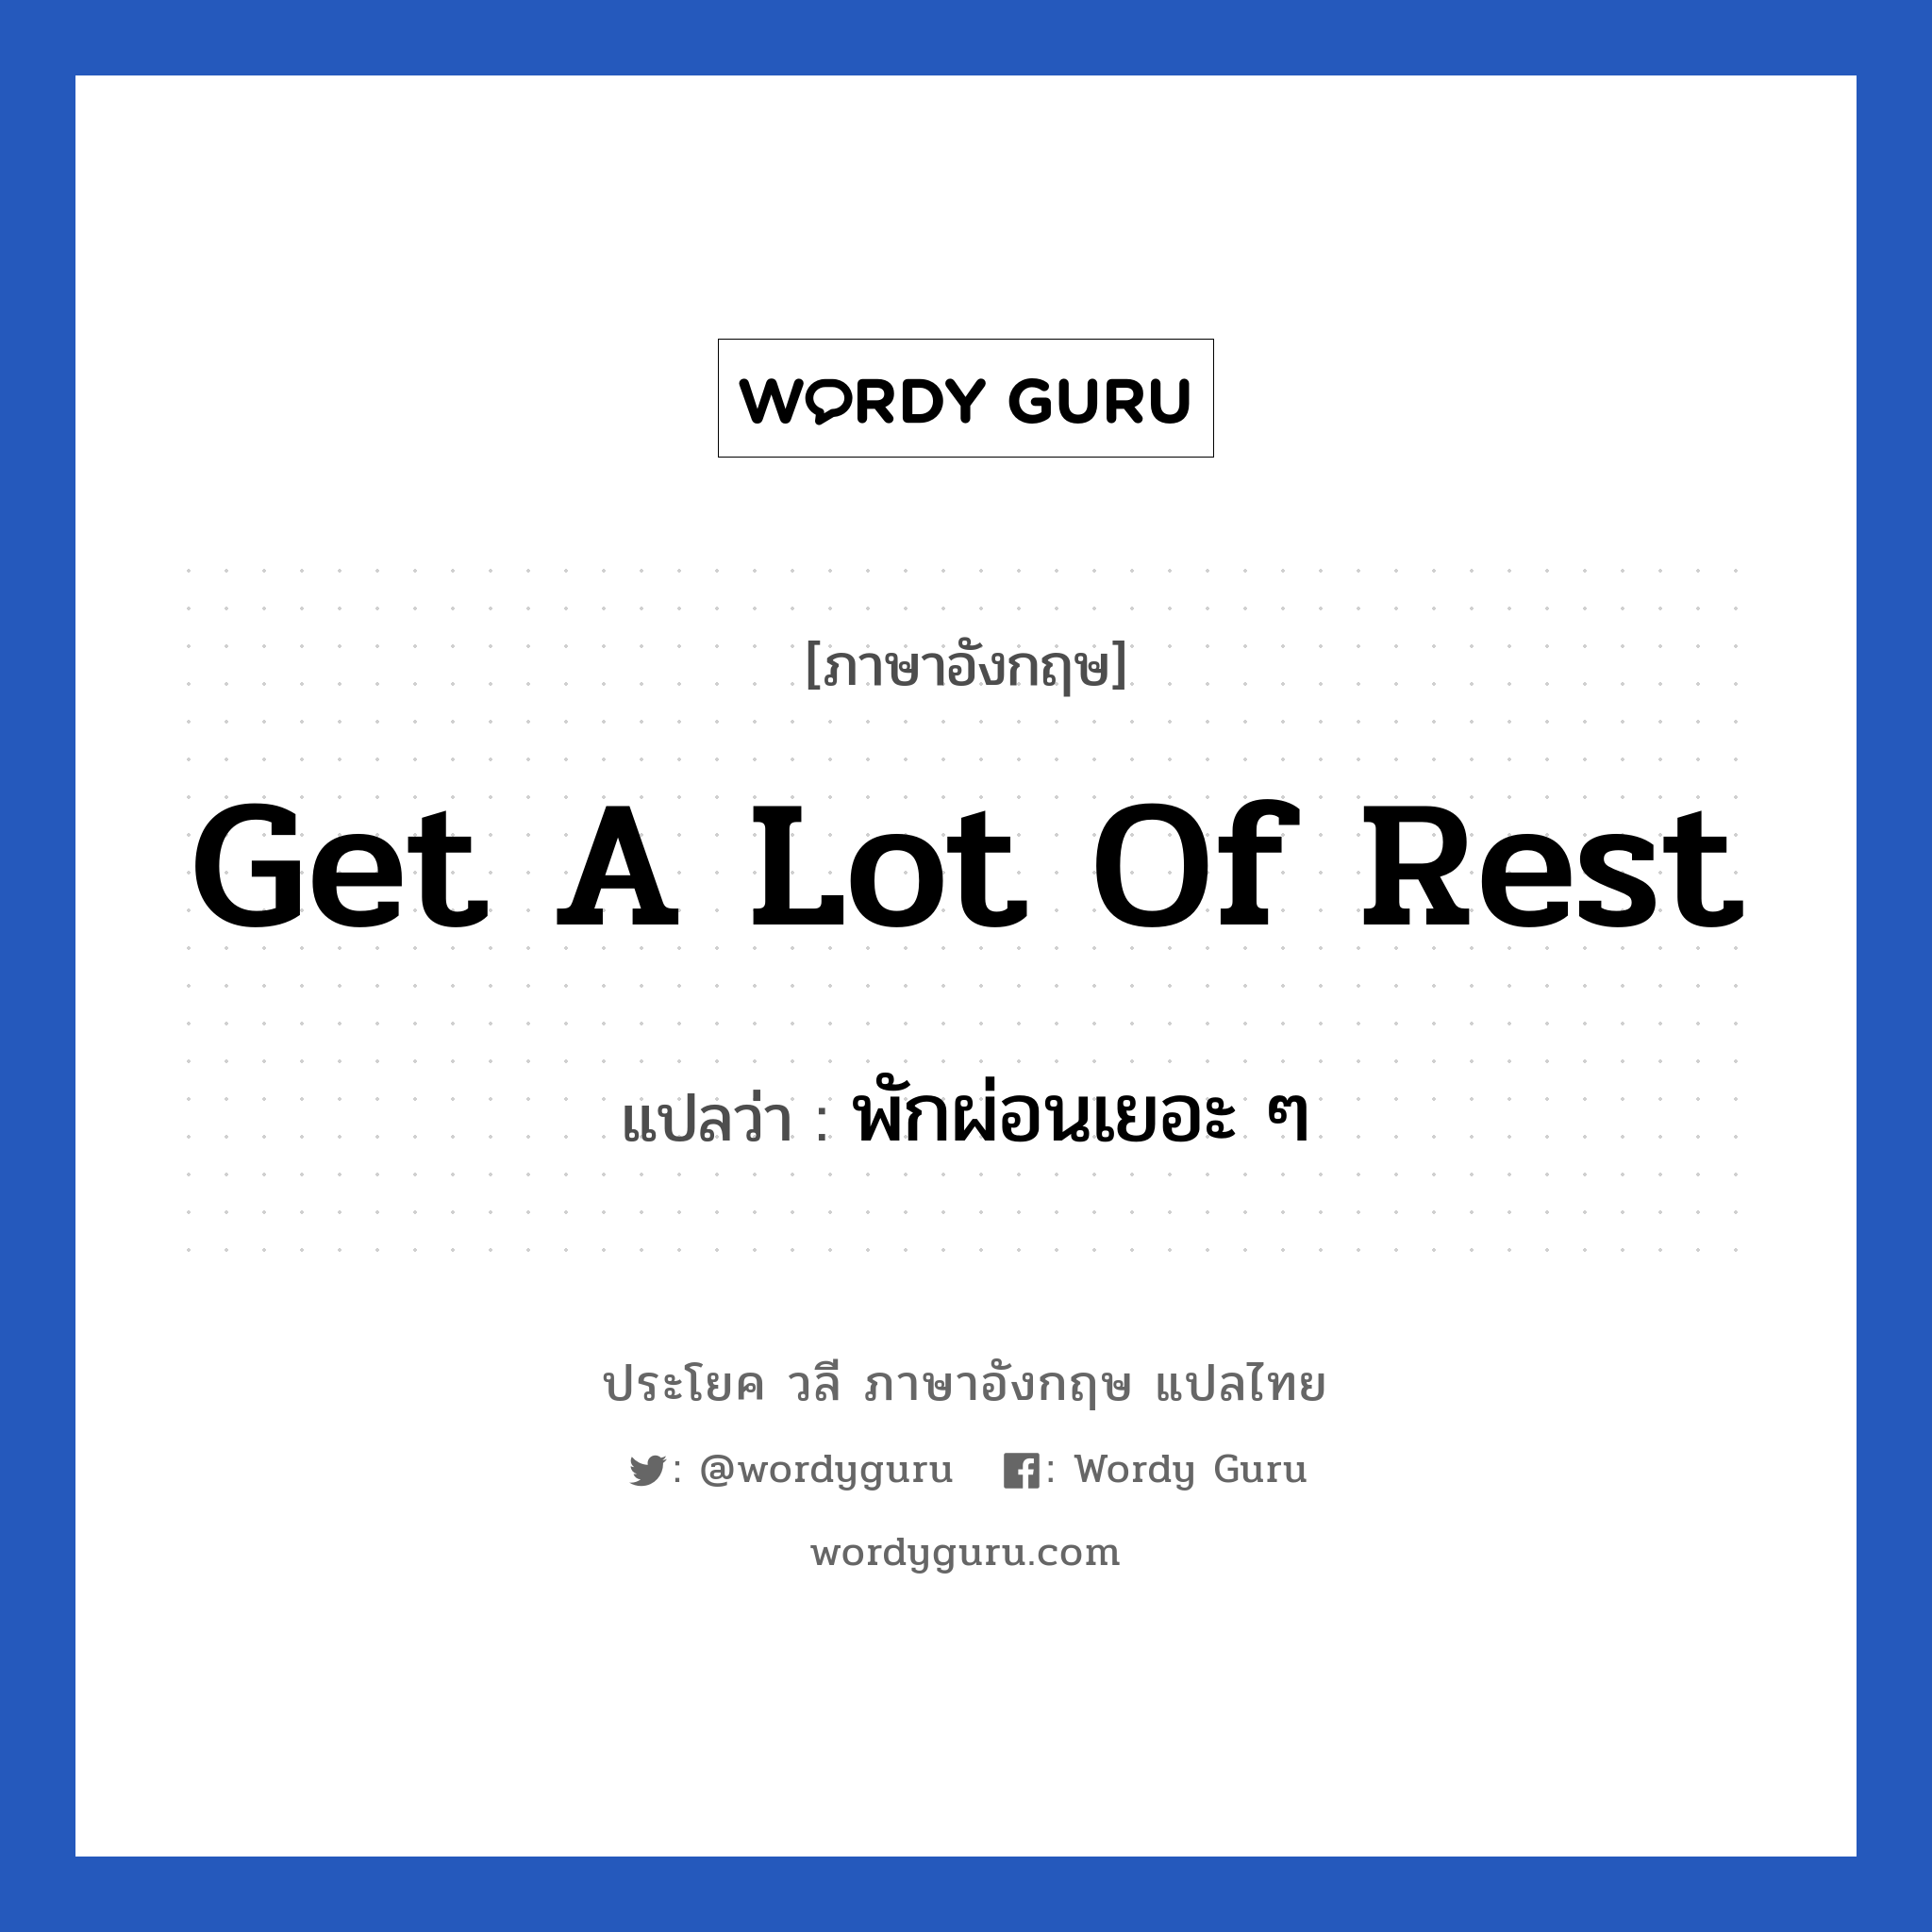 Get a lot of rest แปลว่า?, วลีภาษาอังกฤษ Get a lot of rest แปลว่า พักผ่อนเยอะ ๆ หมวด เป็นห่วง